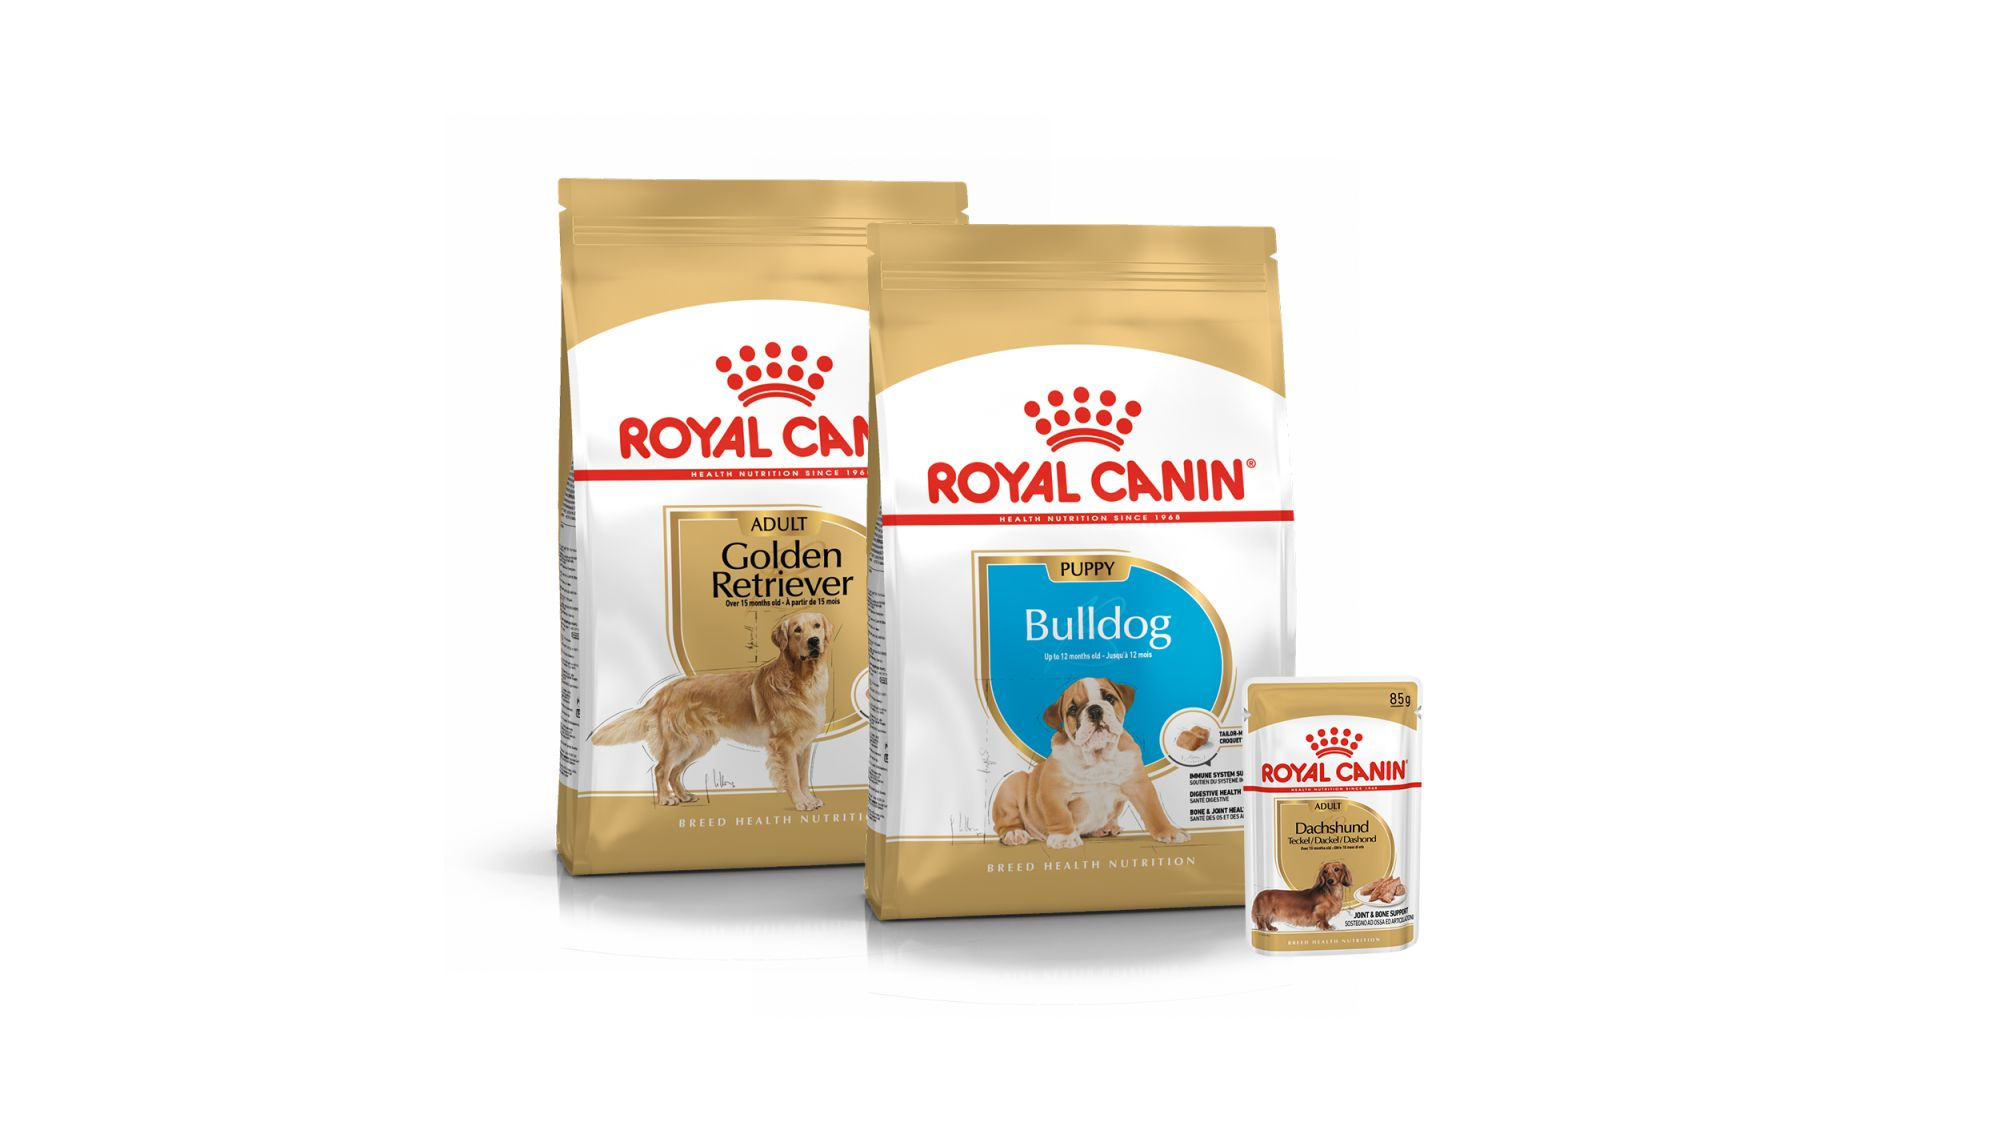 Ein Produktfoto von drei Beuteln mit unterschiedlichen ROYAL CANIN Nahrungen für reinrassige Hunde